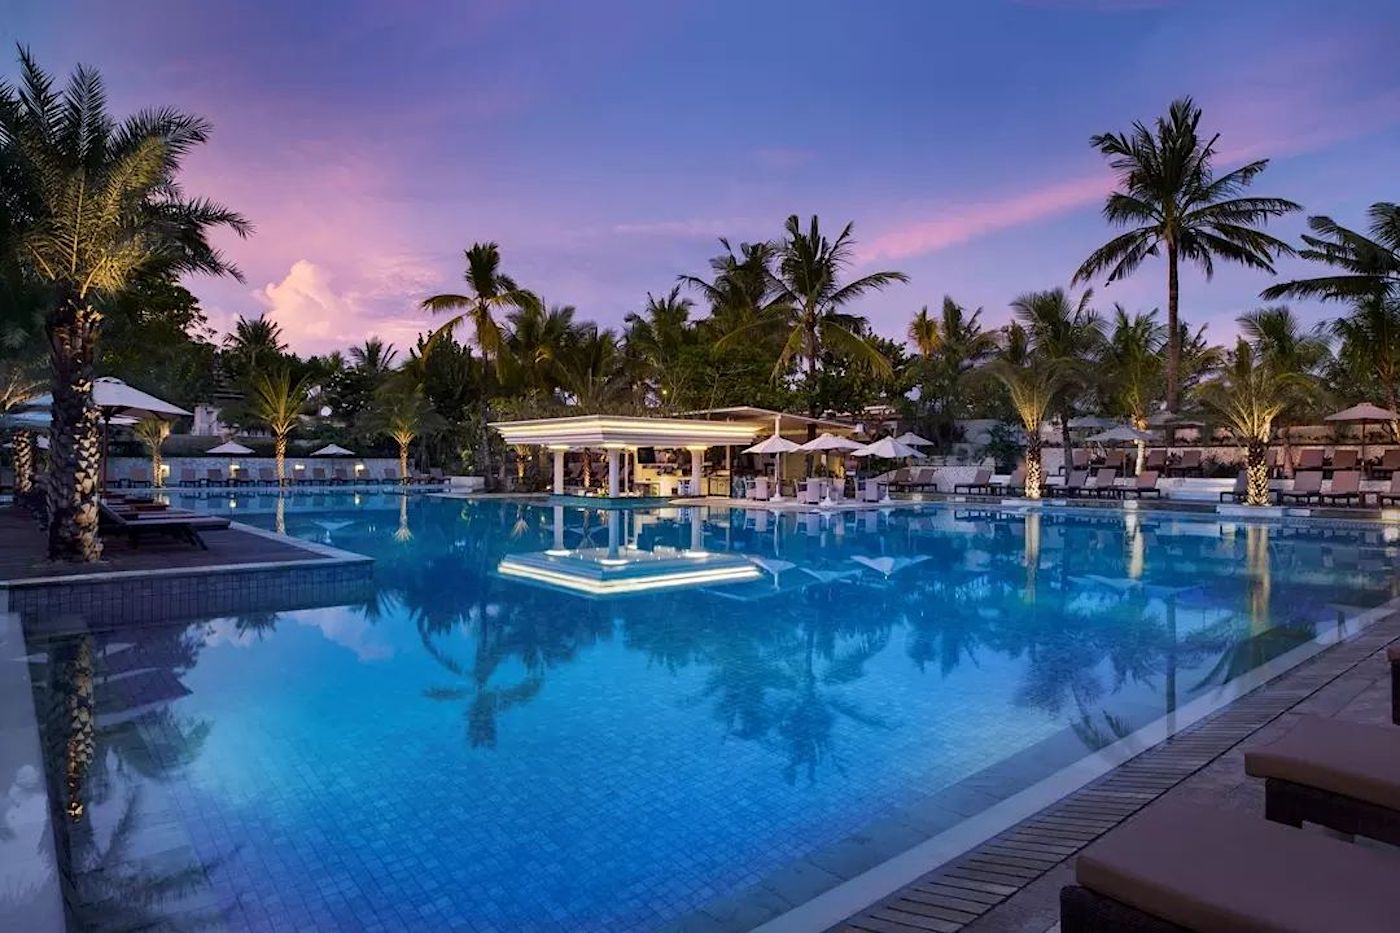 Padma Resort, Legianメインプール